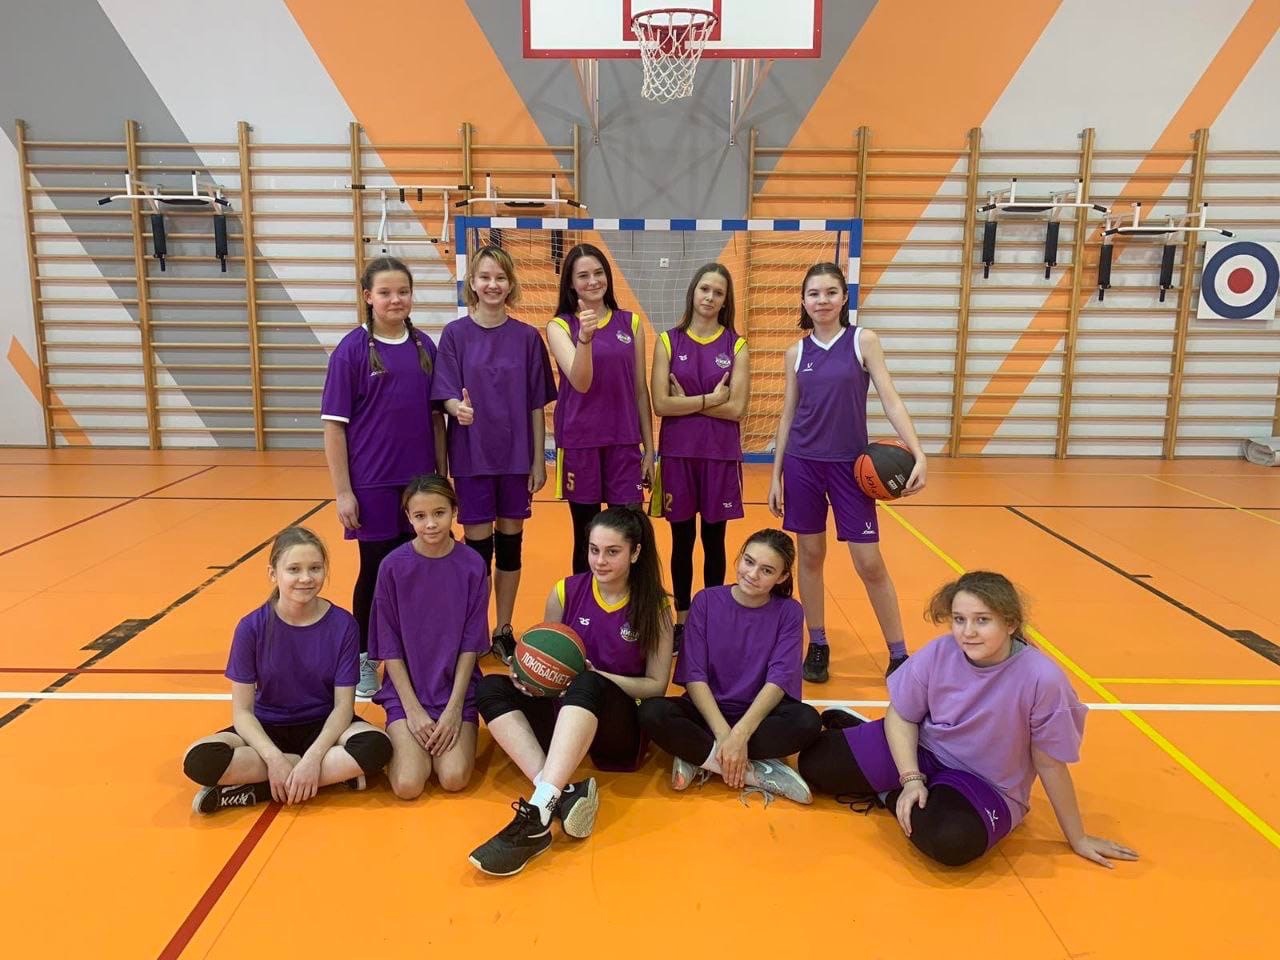 Женская команда по баскетболу заняла второе место в районном турнире среди девушек общеобразовательных учреждений Заводского района г. Саратова.